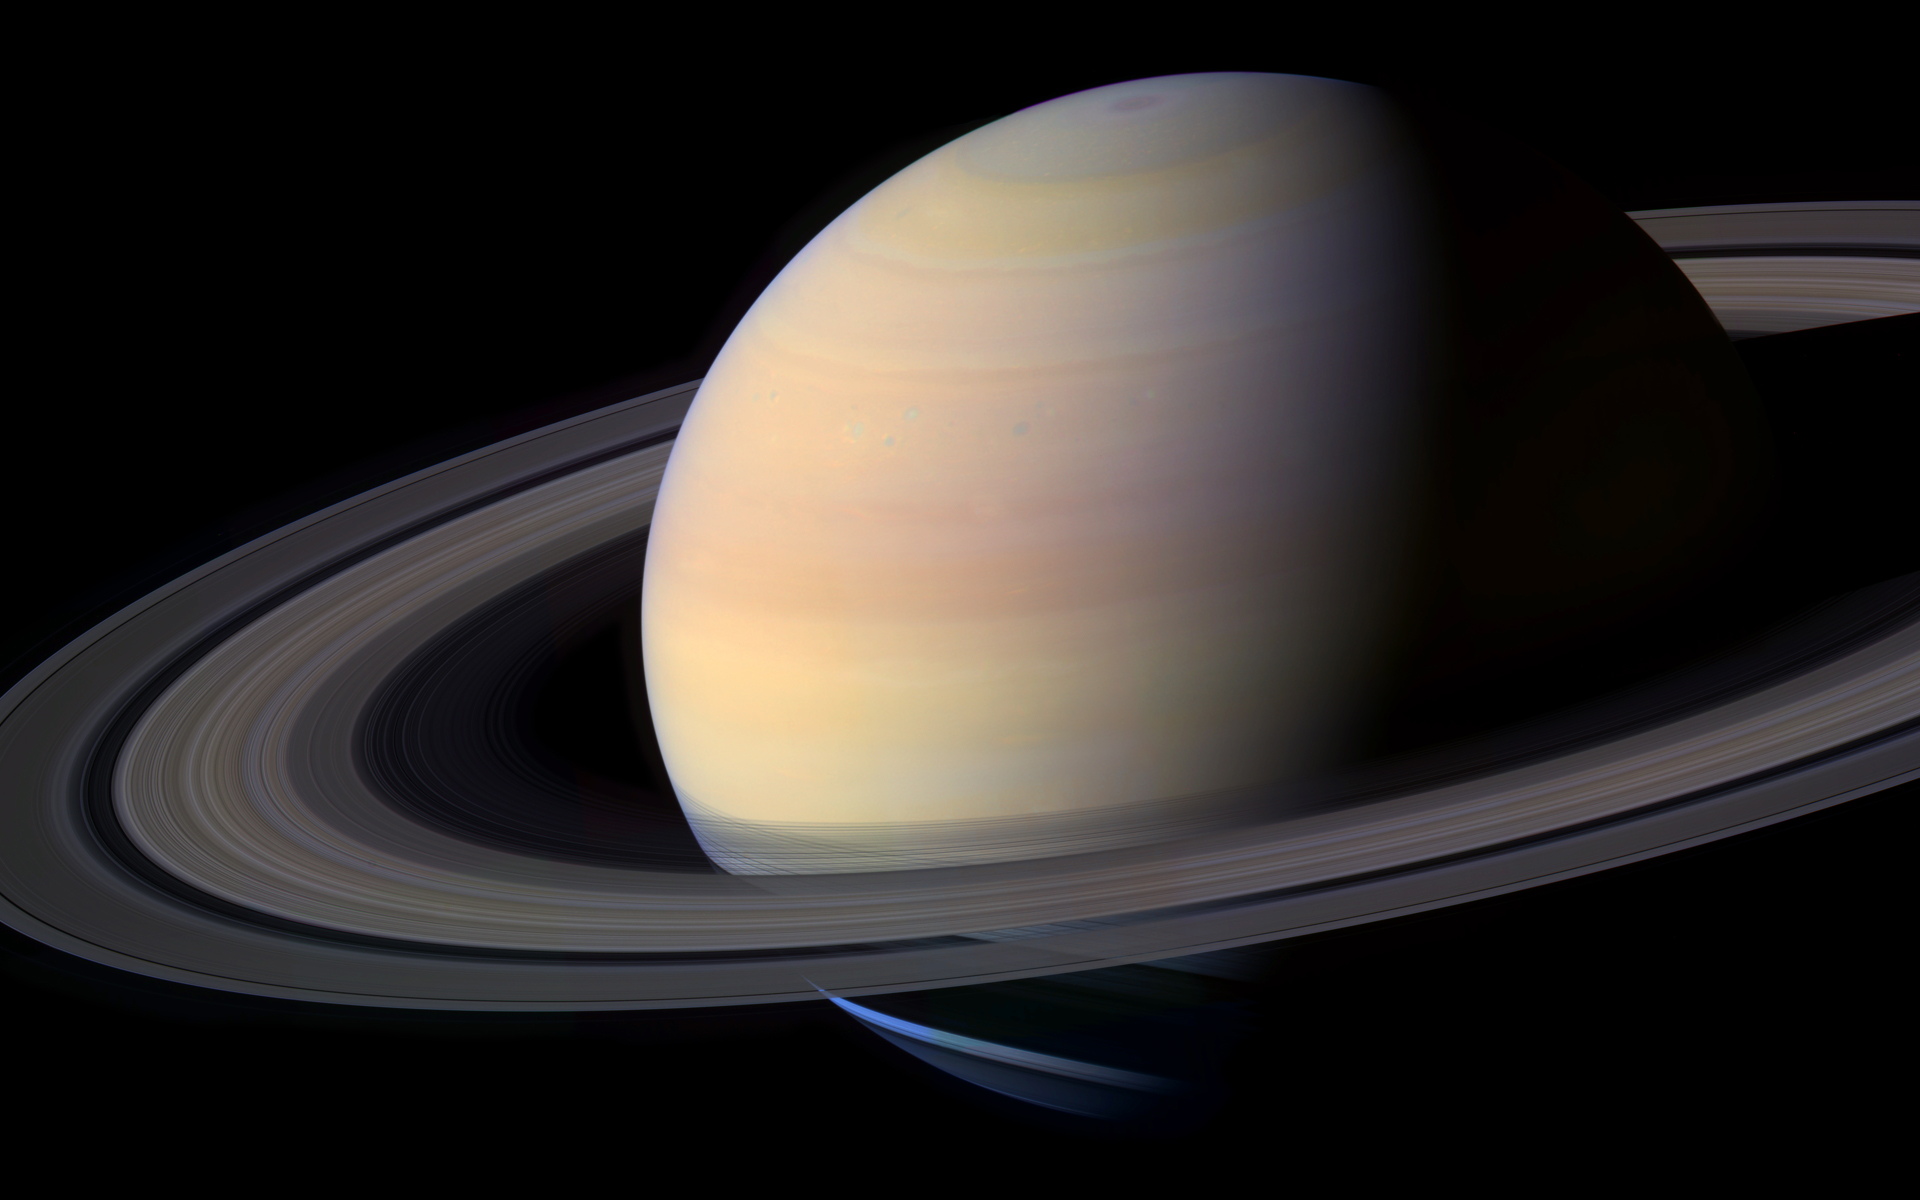 Fond d'ecran Planete Saturne